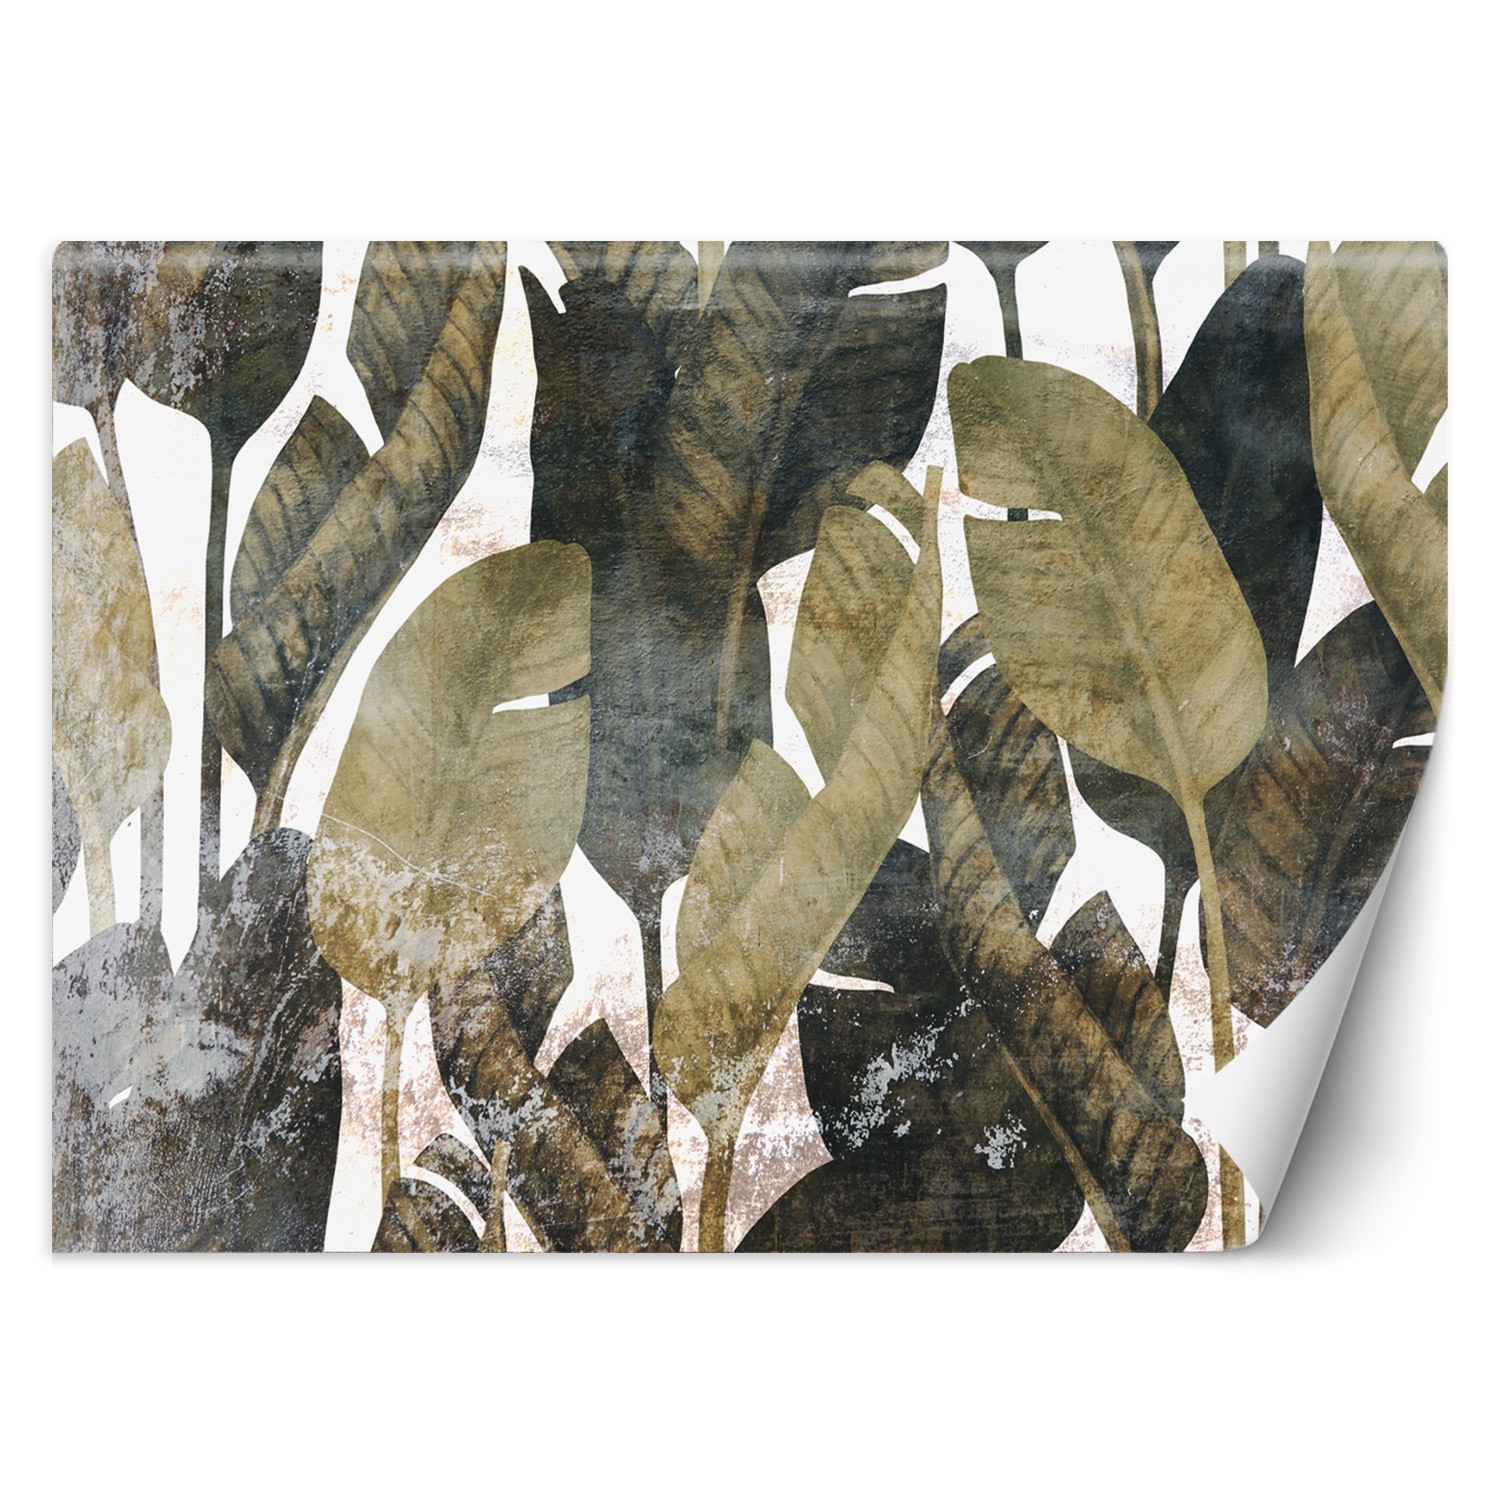 Trend24 – Behang – Bananenblaadjes – Vliesbehang – Fotobehang 3D – Behang Woonkamer – 350x245x2 cm – Incl. behanglijm